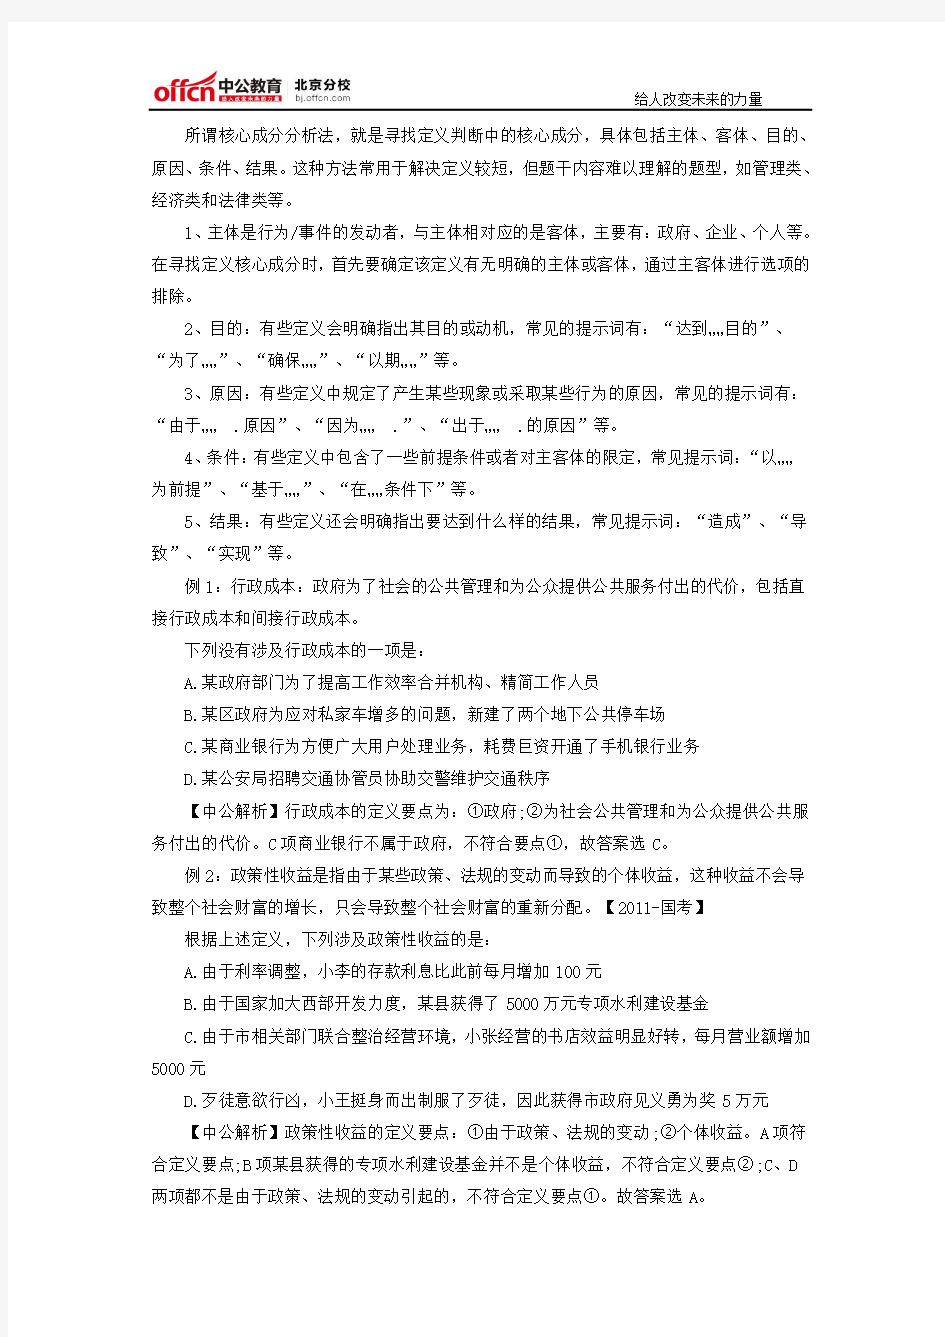 2016年北京公务员考试行测答题技巧：定义判断杀手锏分析核心成分